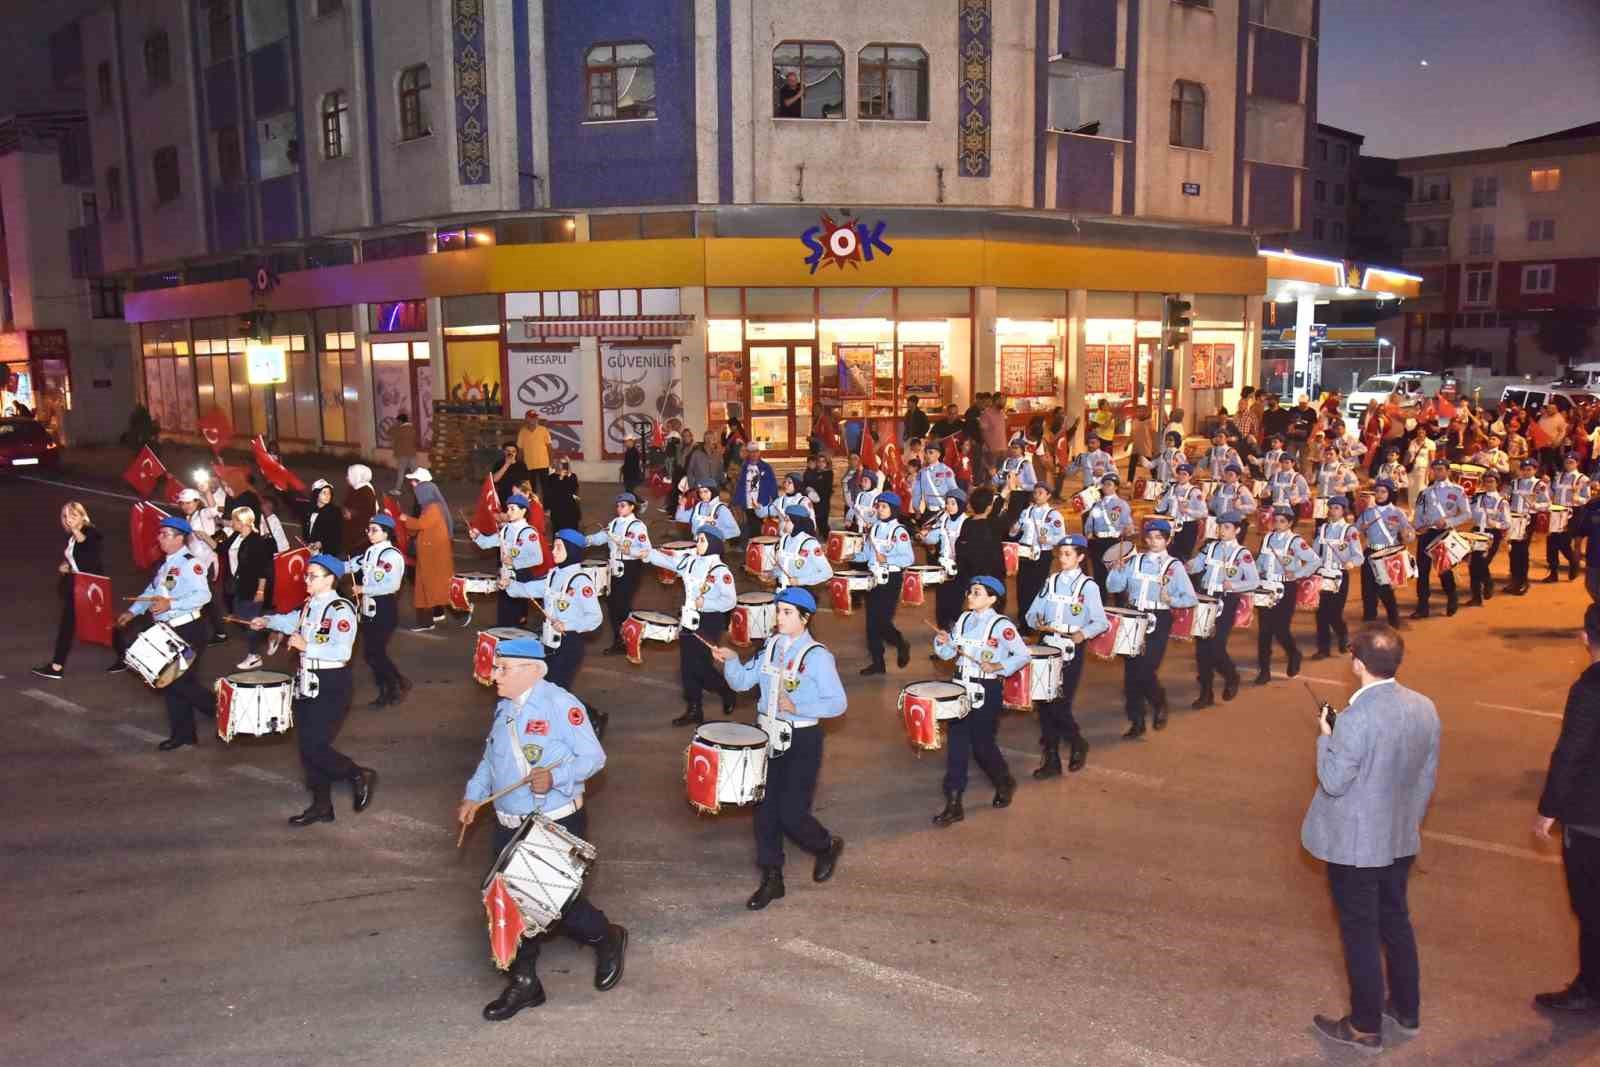 Tekkeköy Cumhuriyet’in 100. yılını coşkuyla kutladı